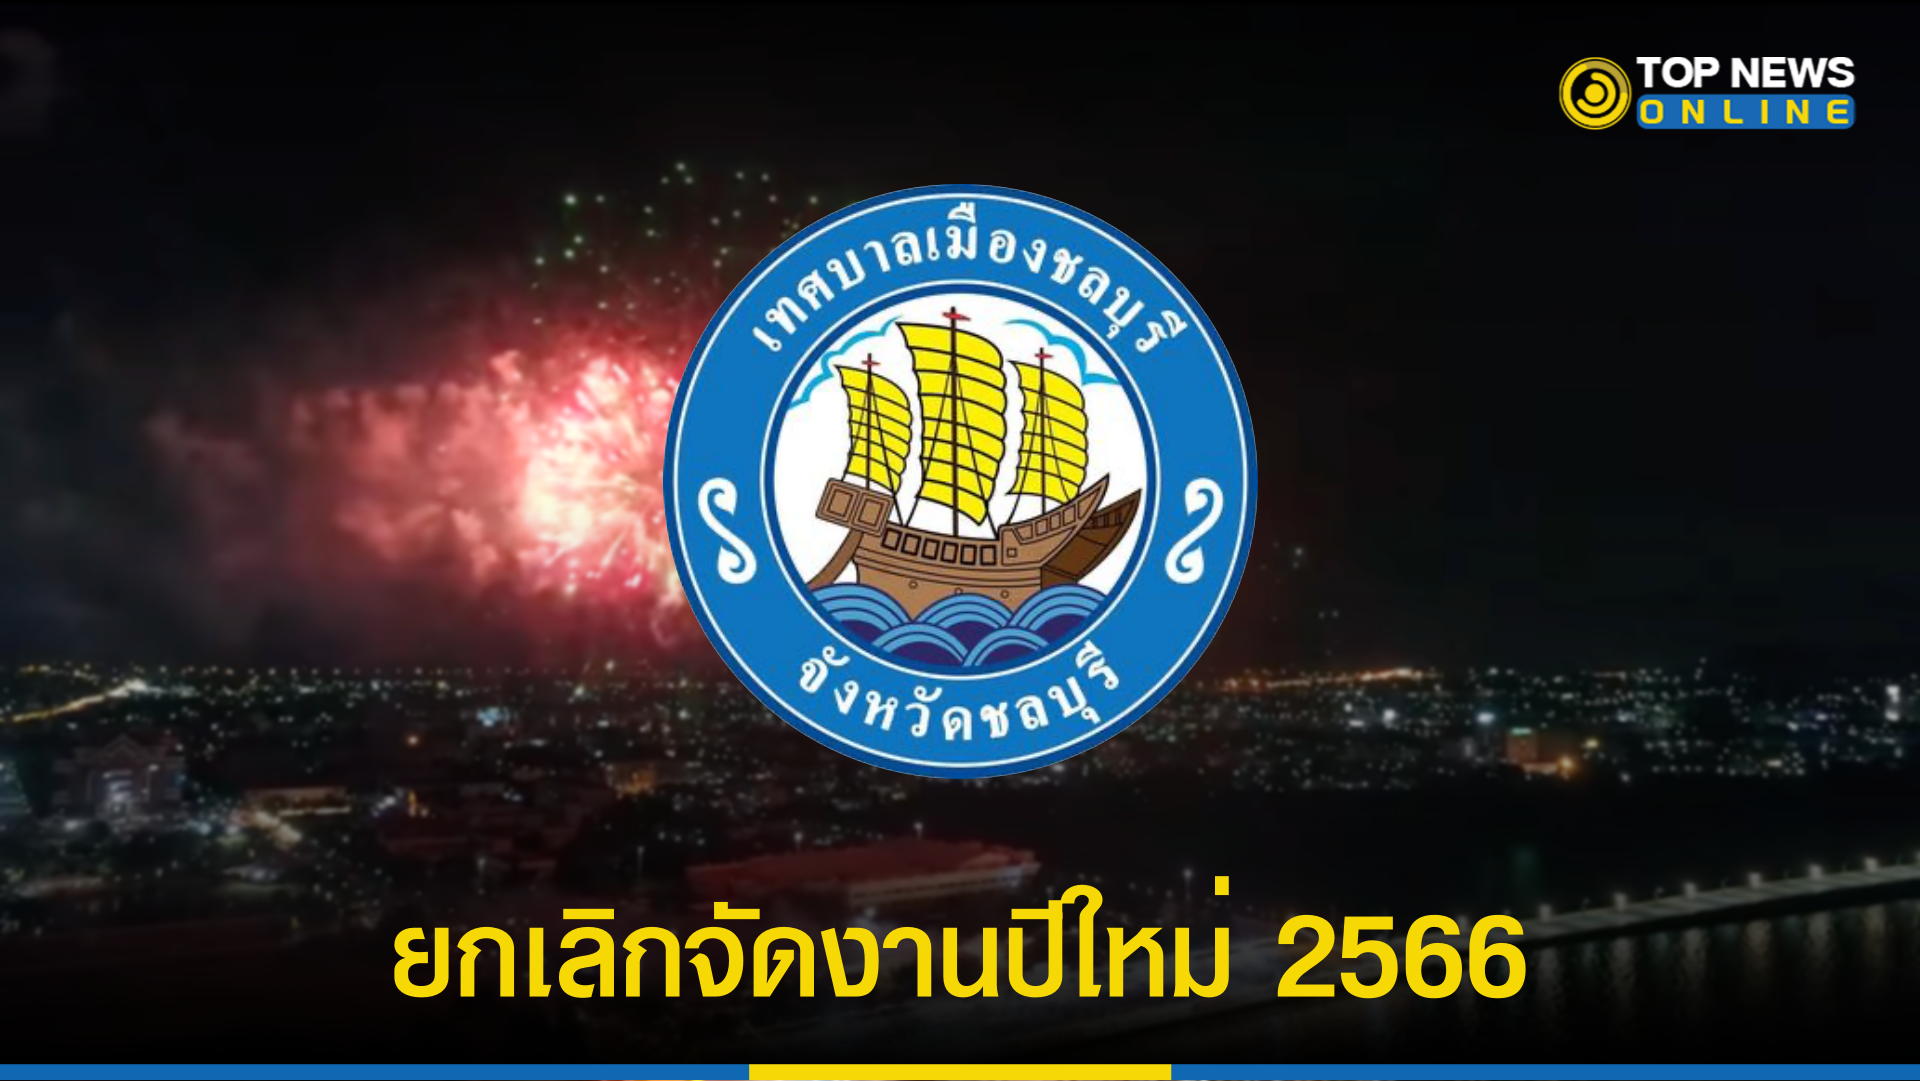 “ปีใหม่ 2566” เทศบาลเมืองชลบุรี ประกาศด่วน ยกเลิกจัดงาน